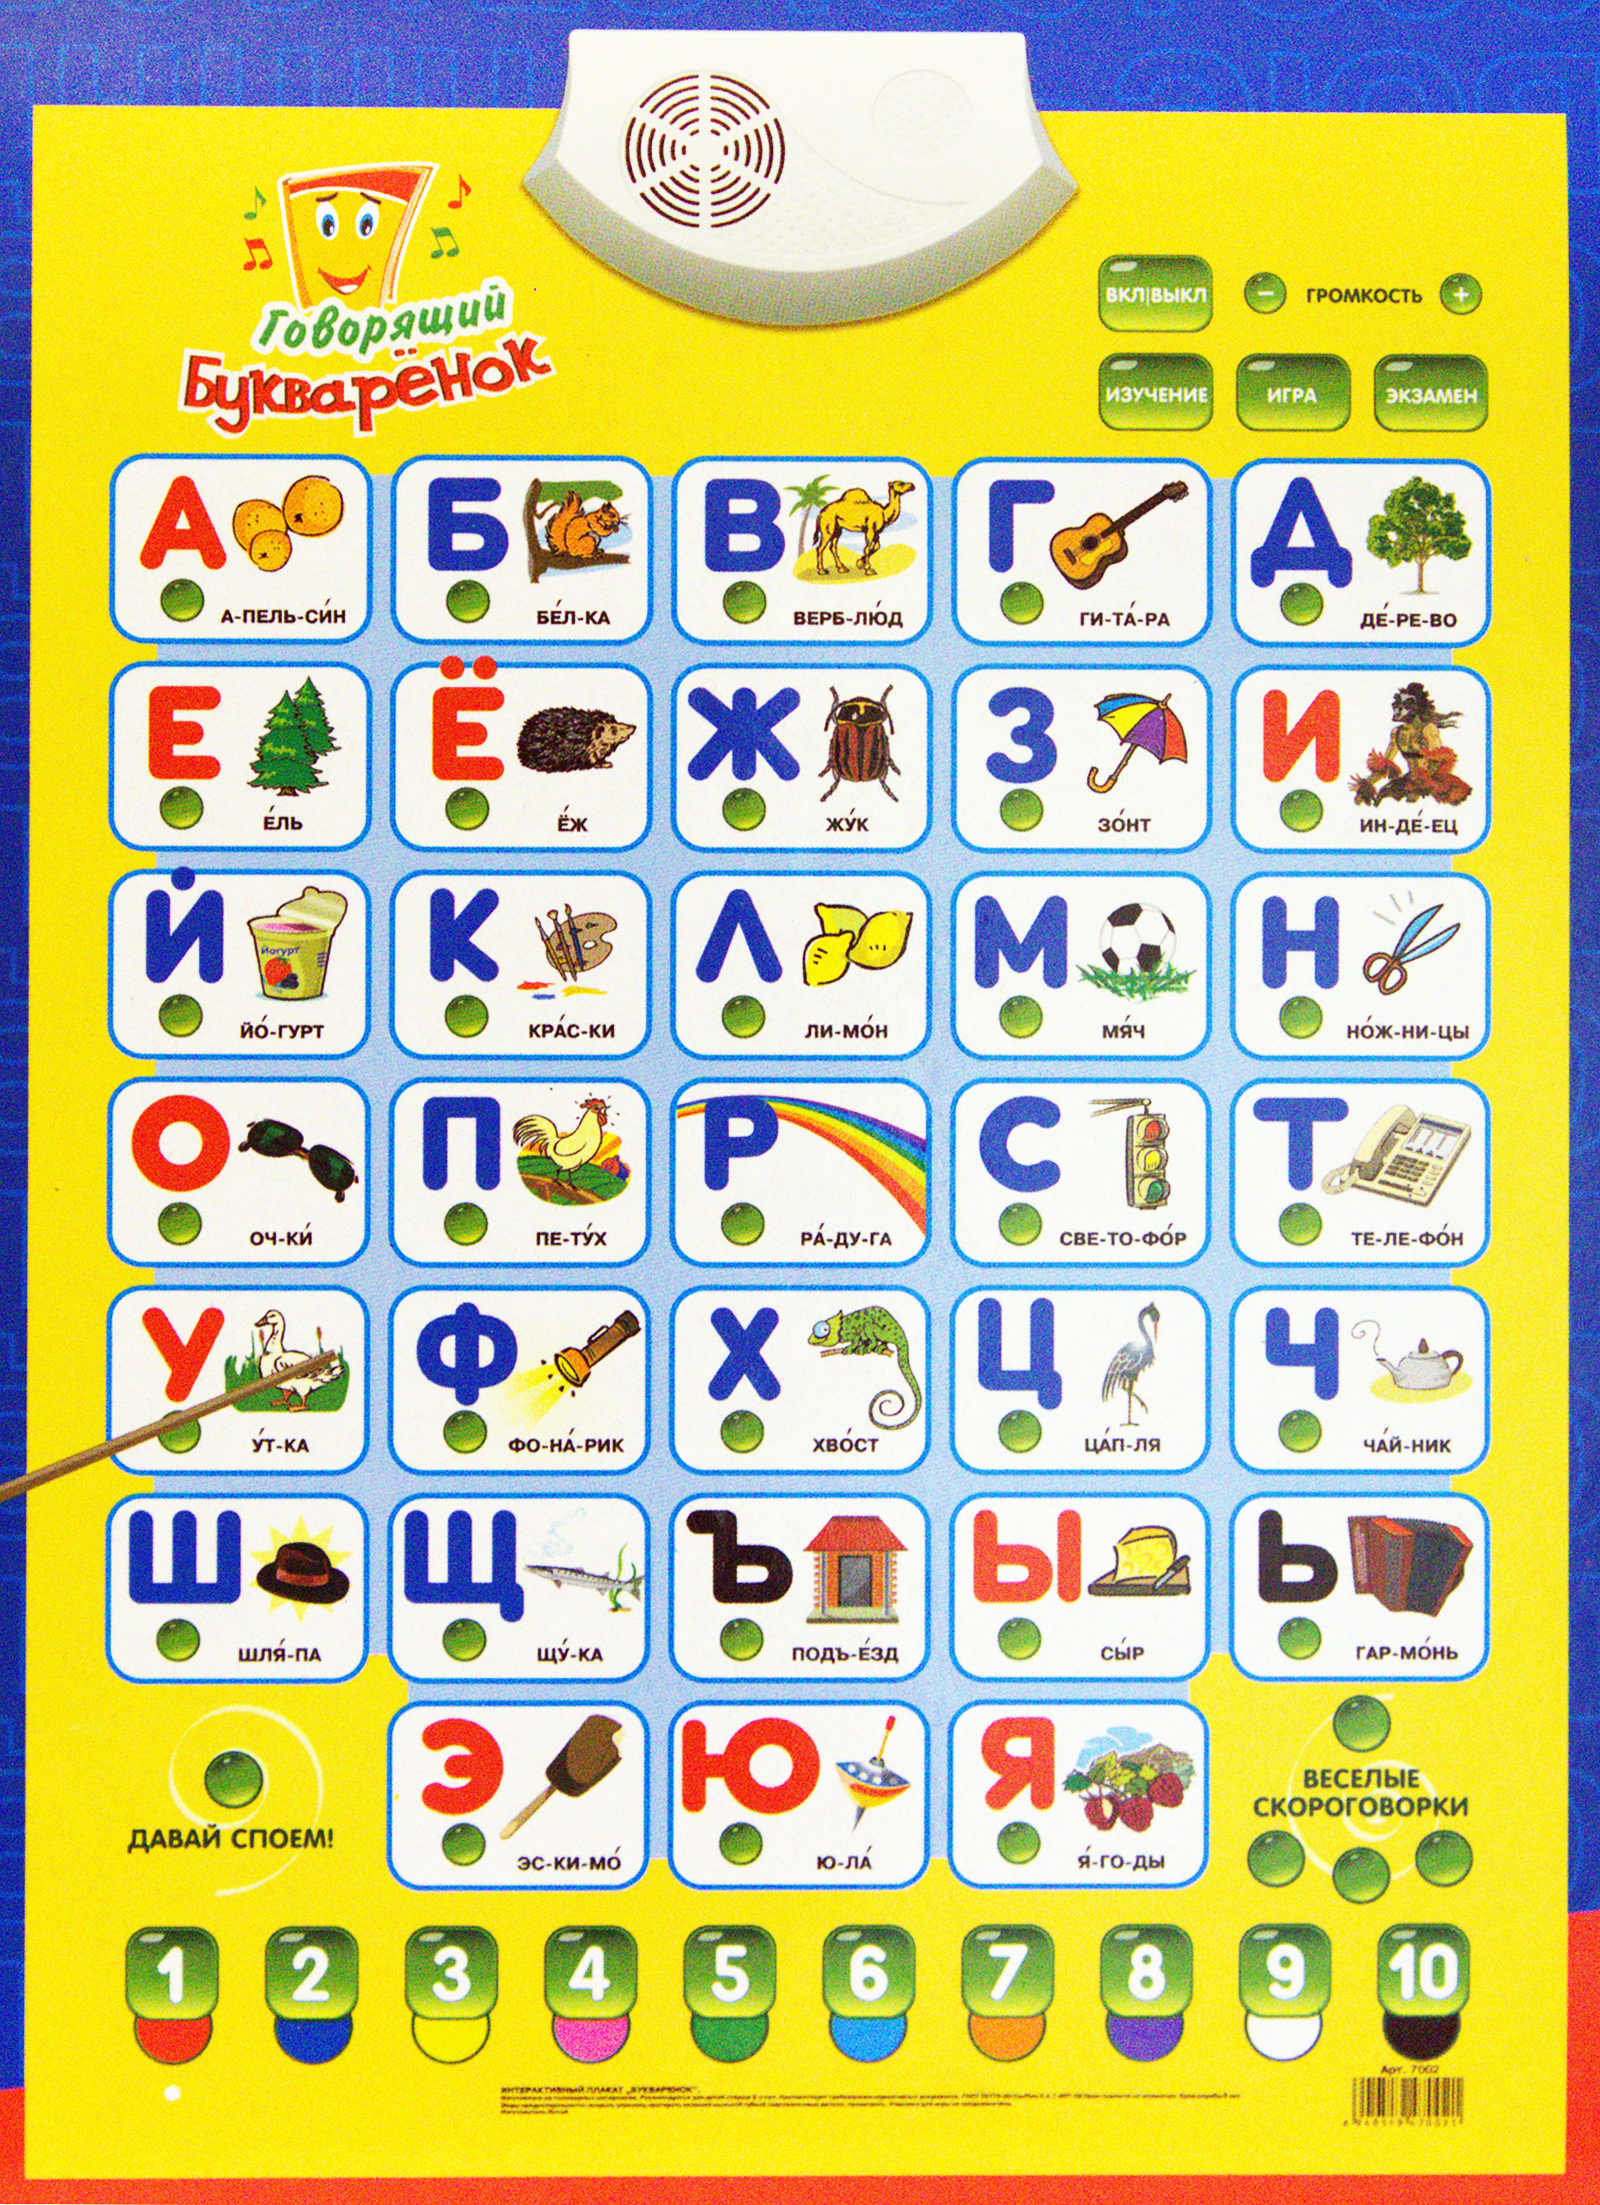 Говорящая азбука буквы. Электронный плакат Букваренок 7002 н/б в/к. Интерактивный плакат Азбука "говорящий Букваренок". Электронный плакат Букваренок 7002. Электронная Азбука для детей.